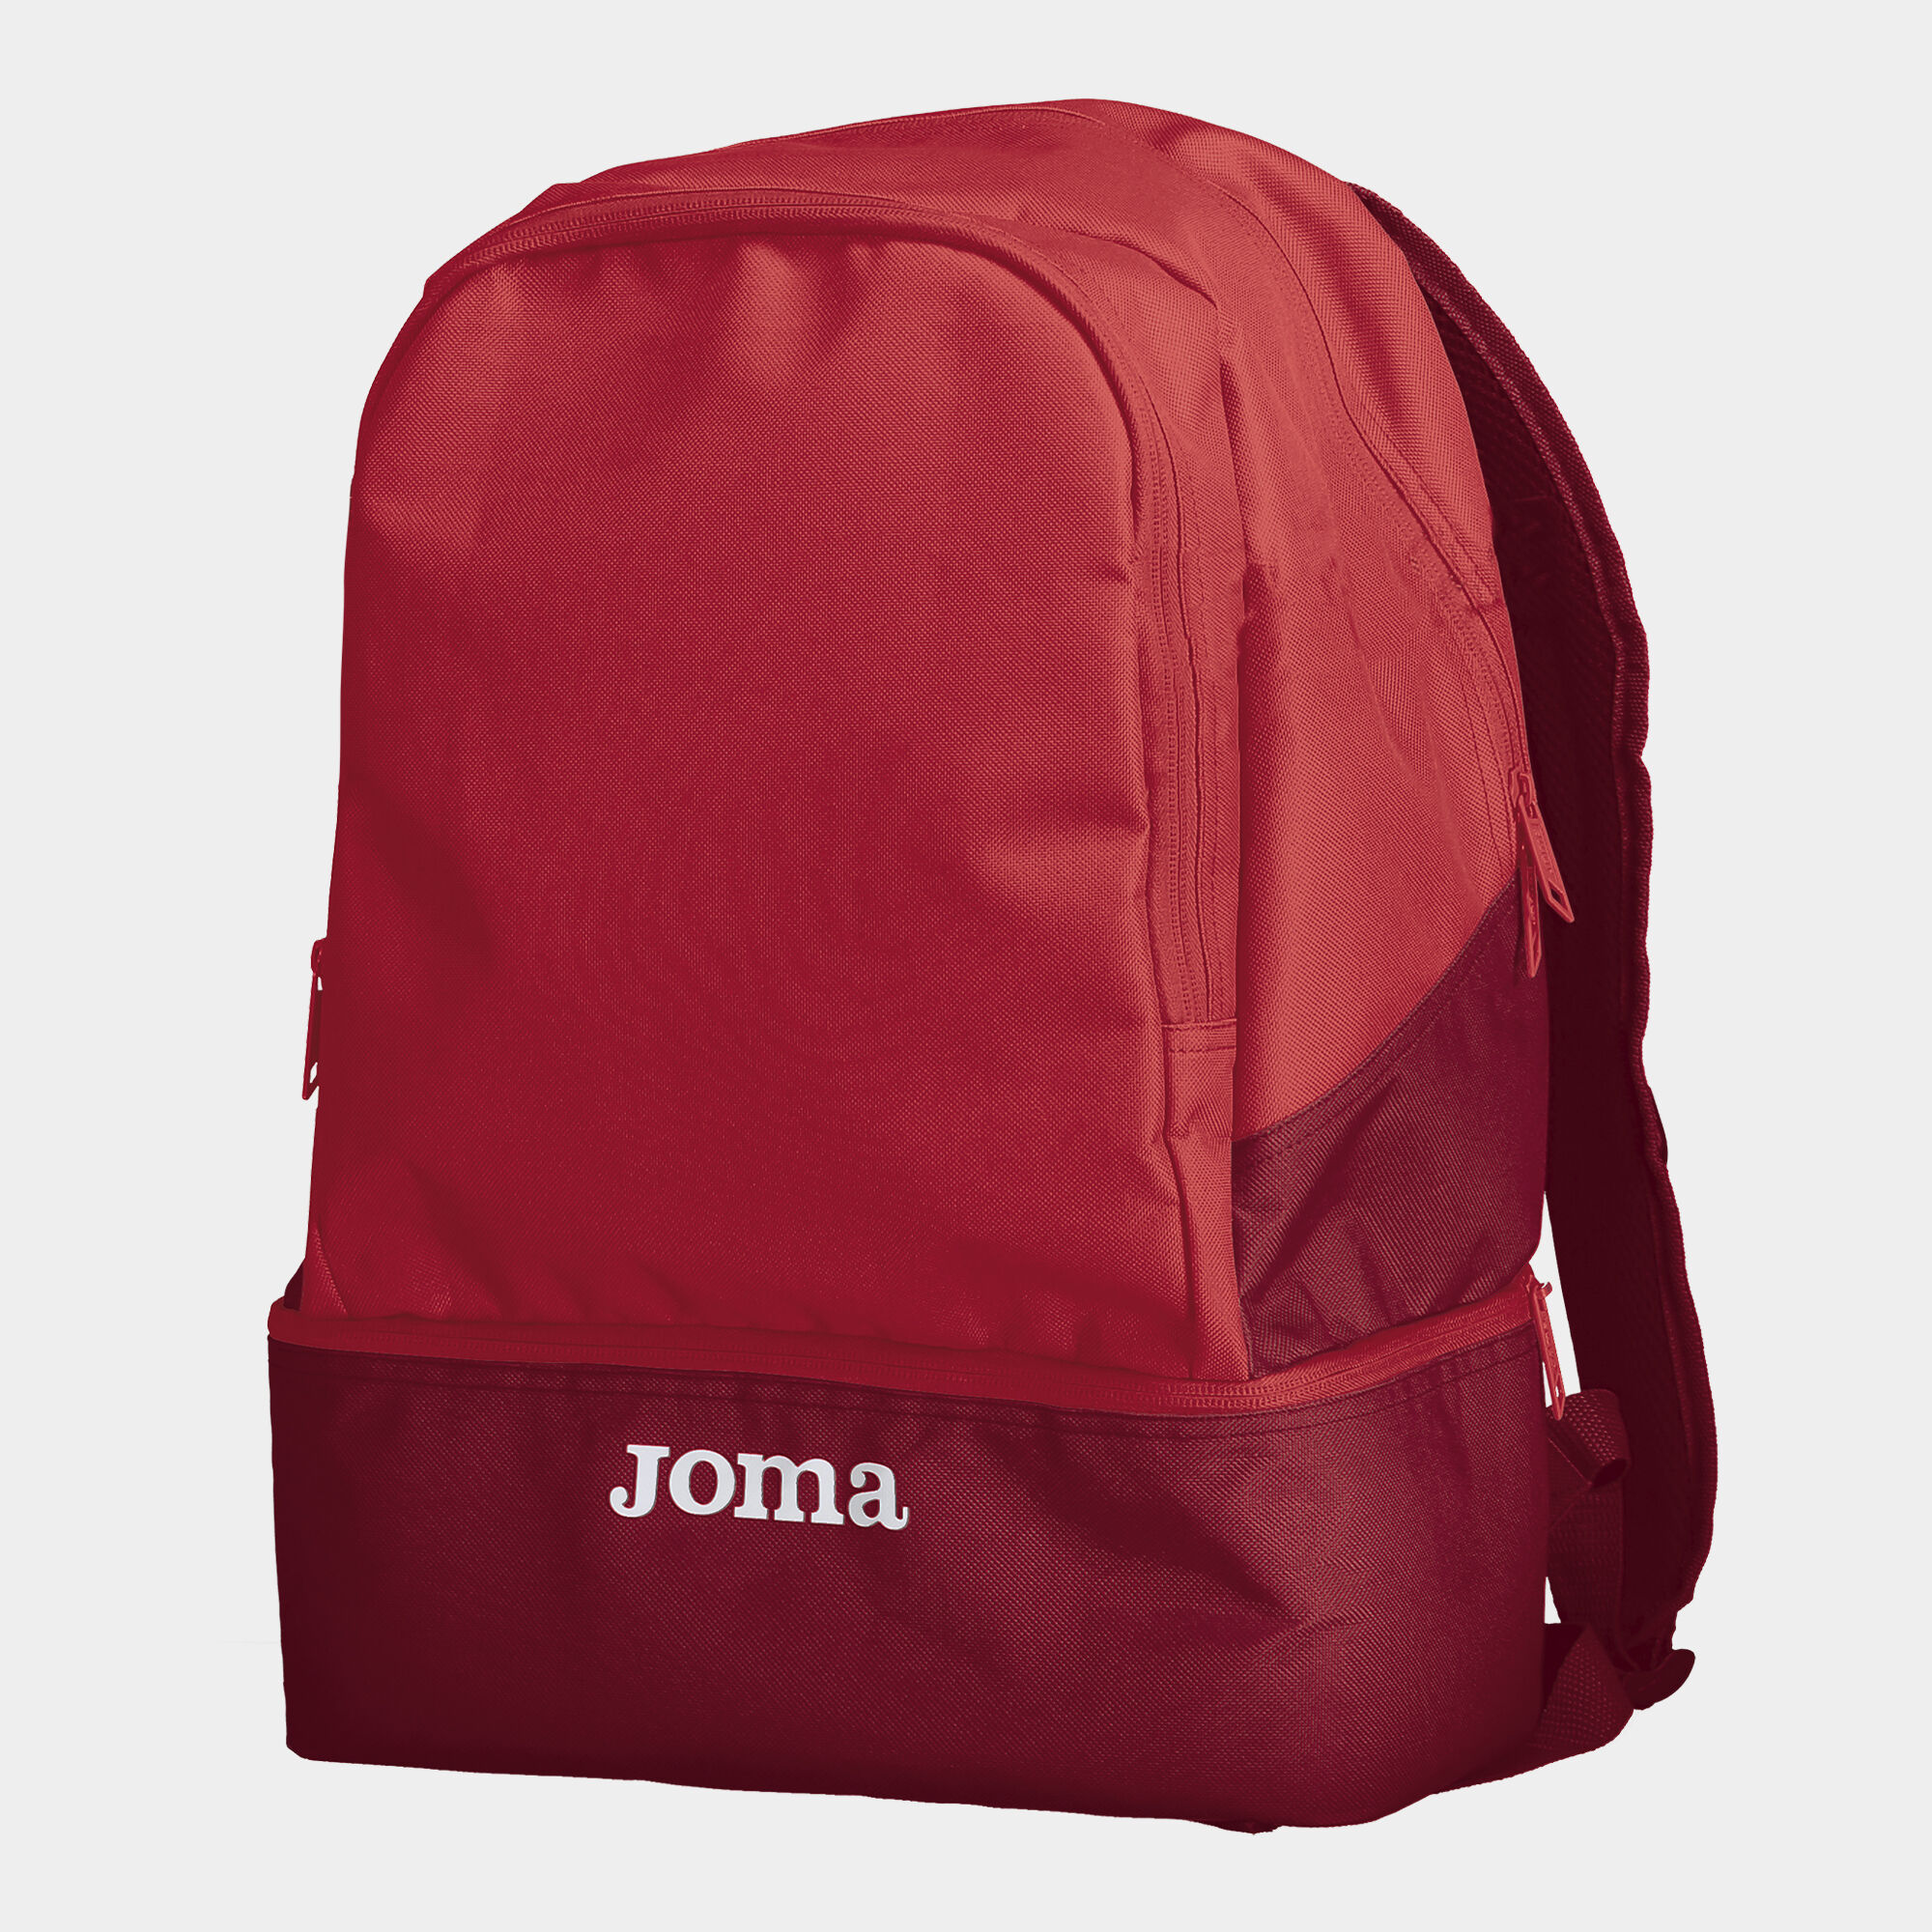 Joma 400235100_5, Backpack Unisex Adulto, Multicolor, Talla única :  : Deportes y aire libre